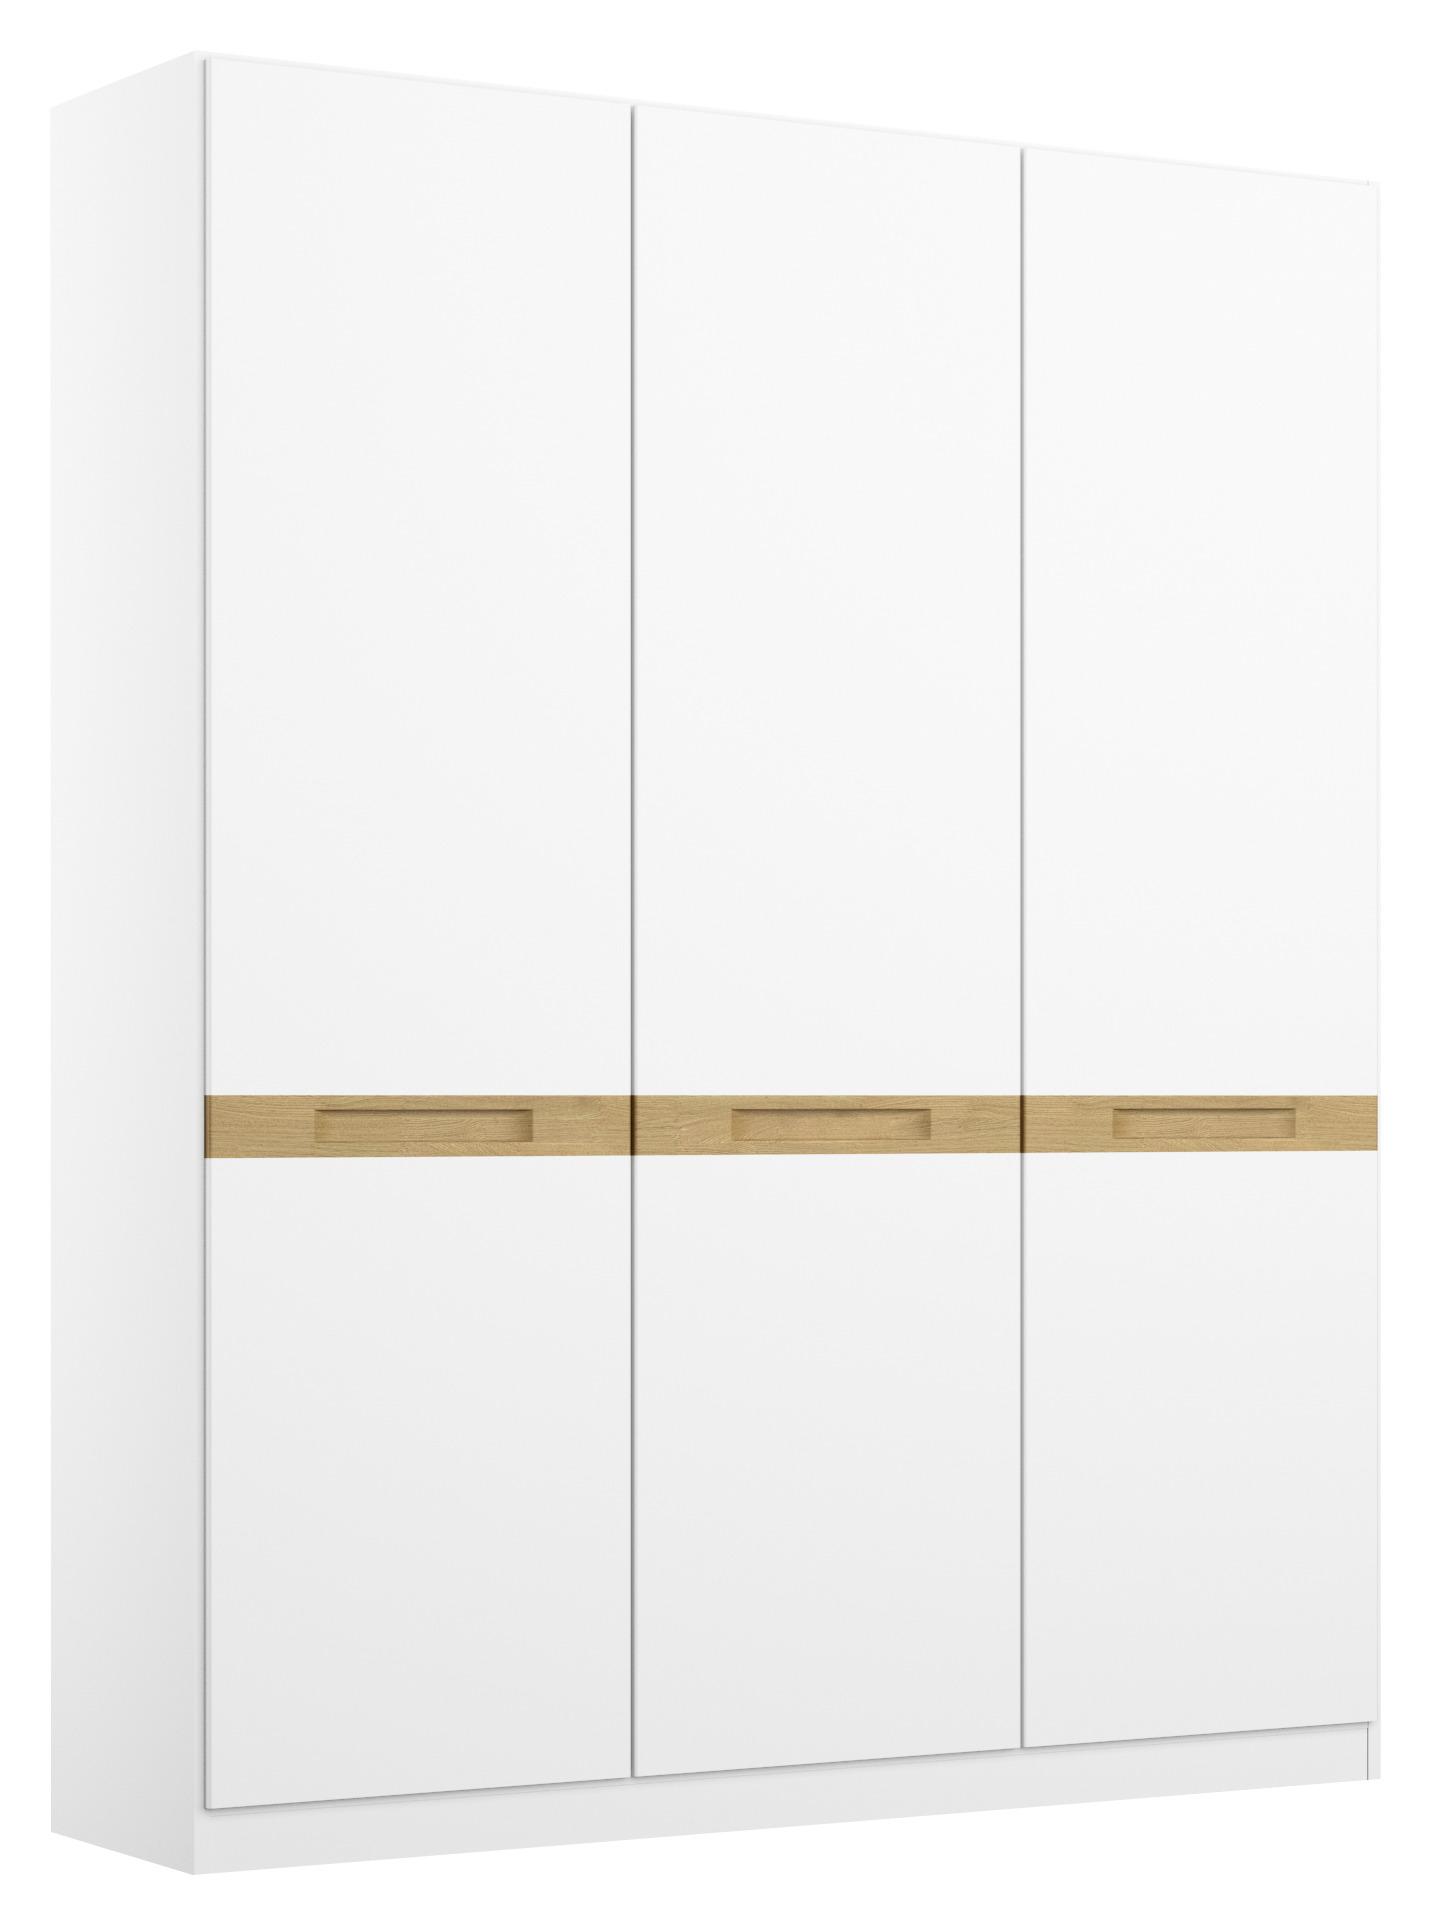 Drehtürenschrank Rangun B: 136 cm Weiß - Eichefarben/Weiß, Basics, Holz/Holzwerkstoff (136/197/54cm) - MID.YOU